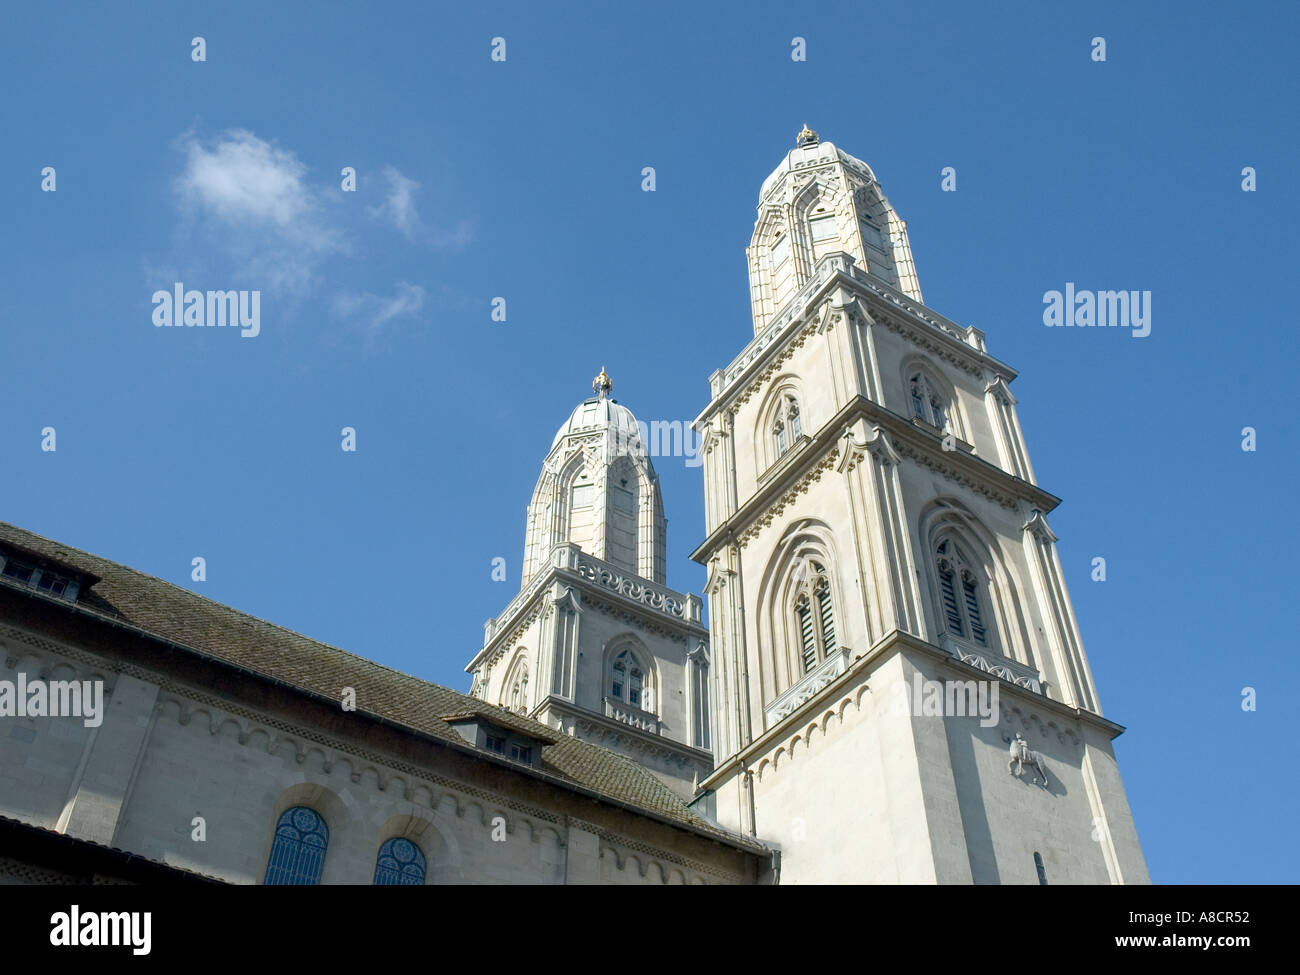 Blickte zu den Glockentürmen der Grossmünster Kathedrale in der Stadt Zürich in der Schweiz Stockfoto